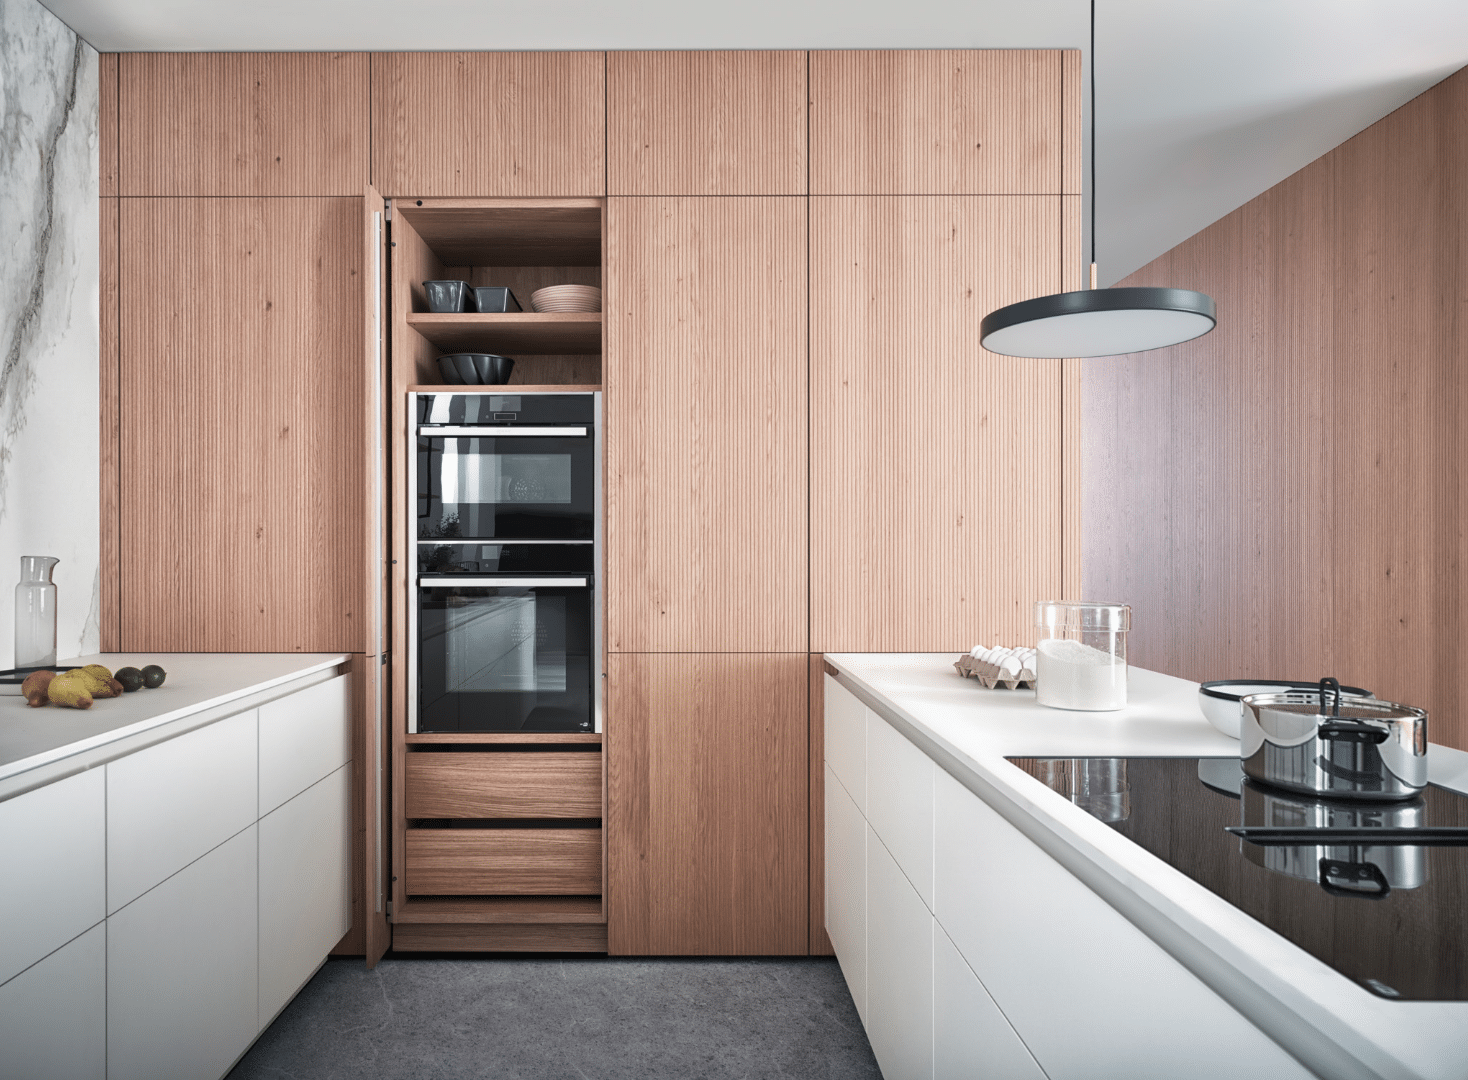 WOHNHAUS Grill & Ronacher zeigt eine moderne Inselküche von LEICHT Küchen mit praktischen, deckenhohen Schränken in hellem Holz.